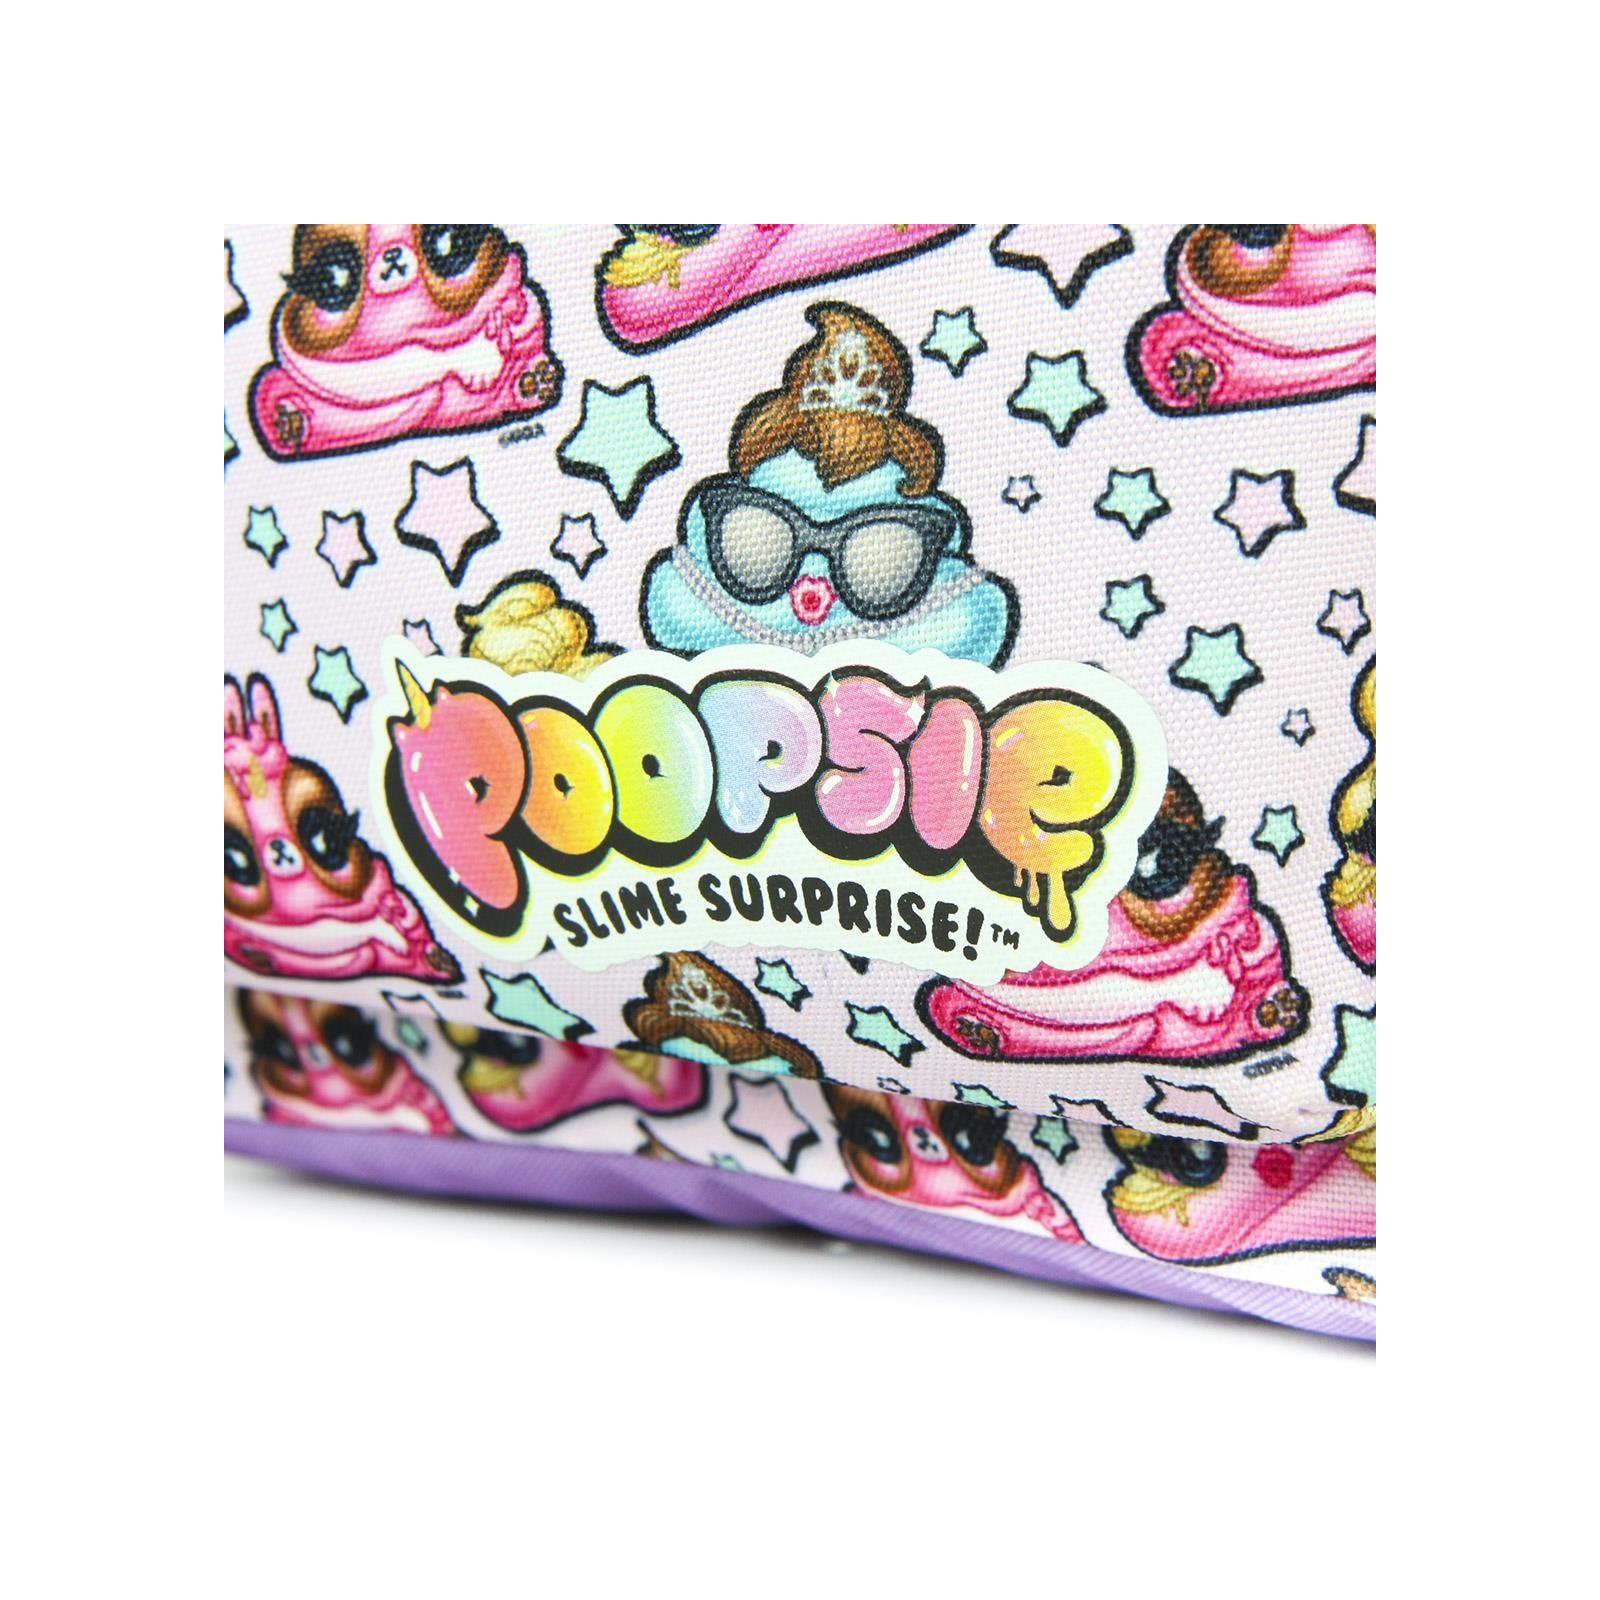 Рюкзак школьный Cerda Poopsie - School Backpack Pink (CERDA-2100003022) изображение 4